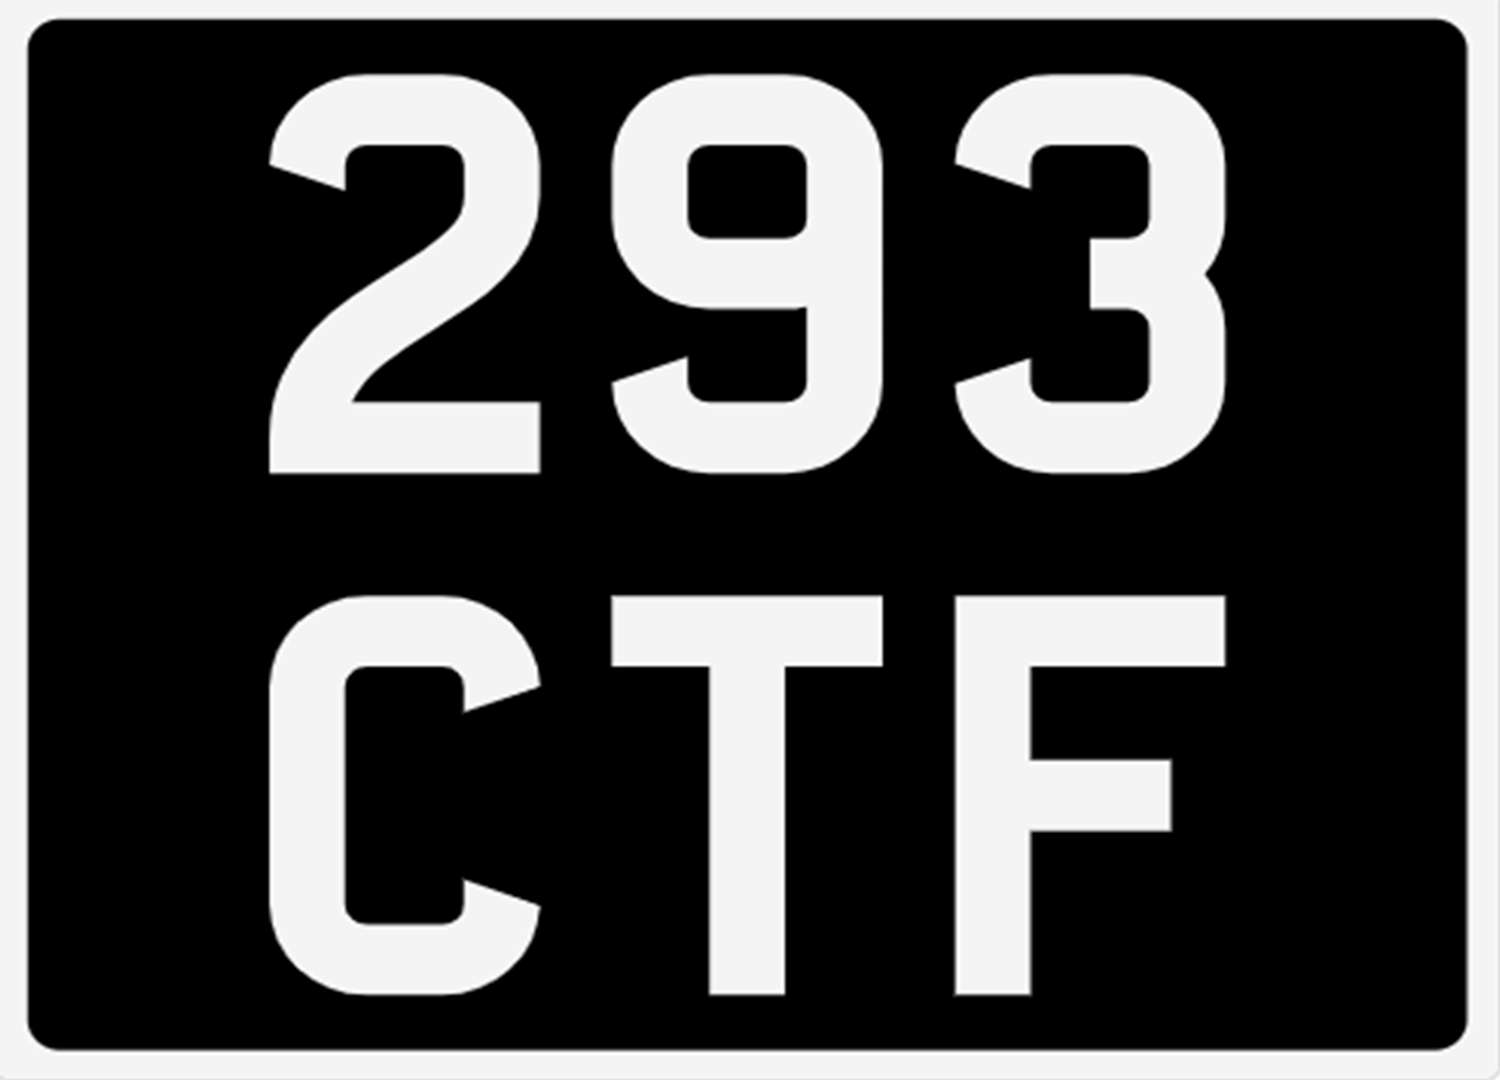 <p>&nbsp; 293 CTF Registration Number&nbsp;</p>